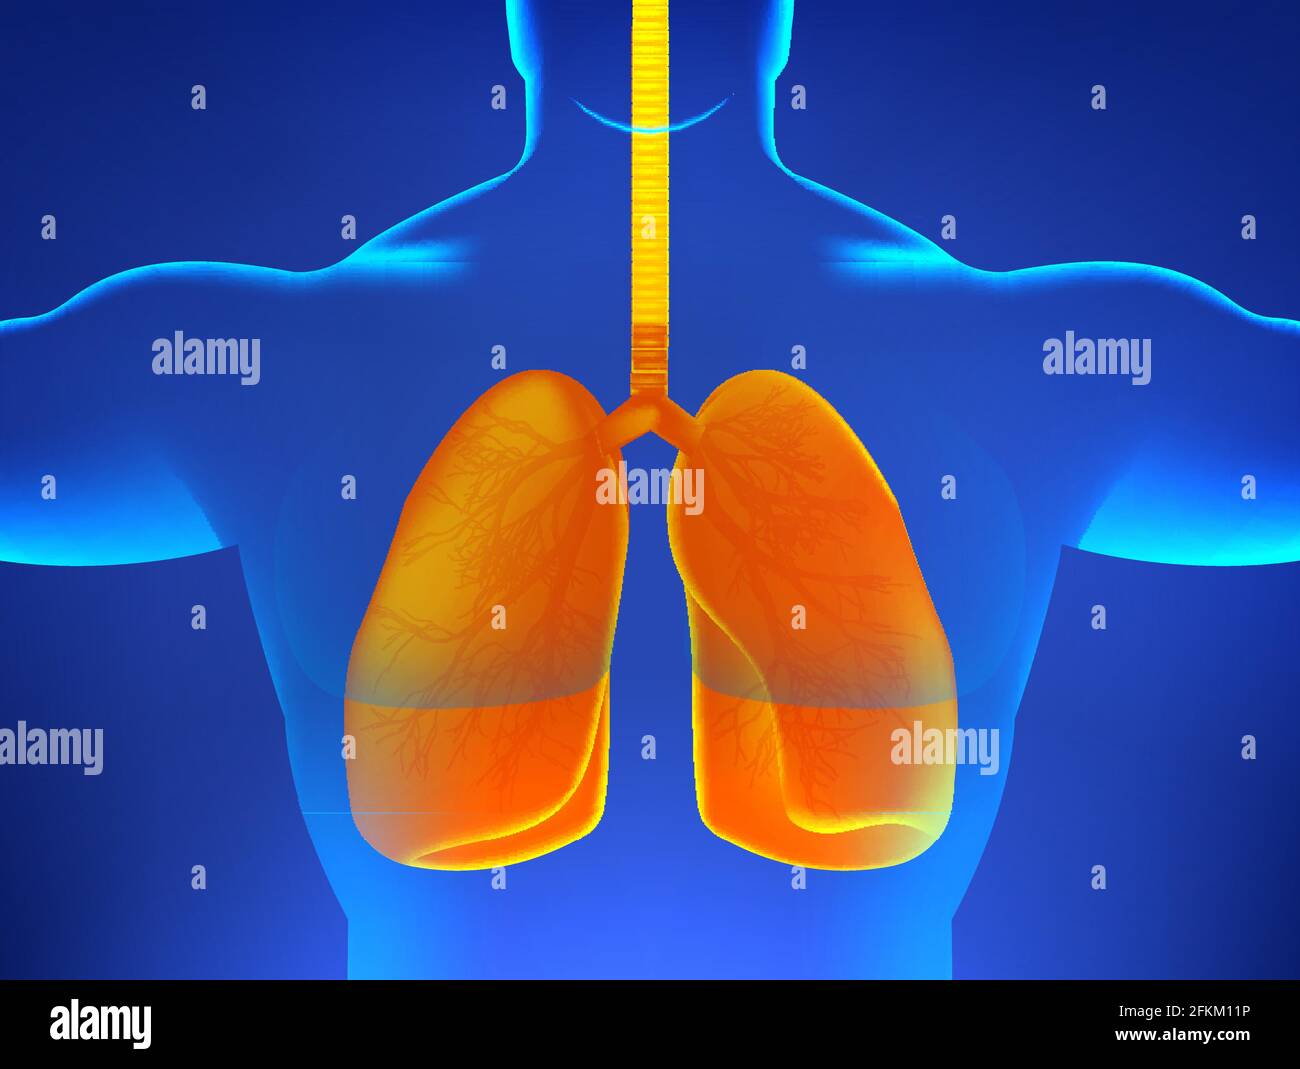 Rayons X corps humain avec poumons malades, pneumonie, virus, asthme ou autres maladies associées aux poumons humains. Hologramme 3D du corps humain et poumons orange Illustration de Vecteur